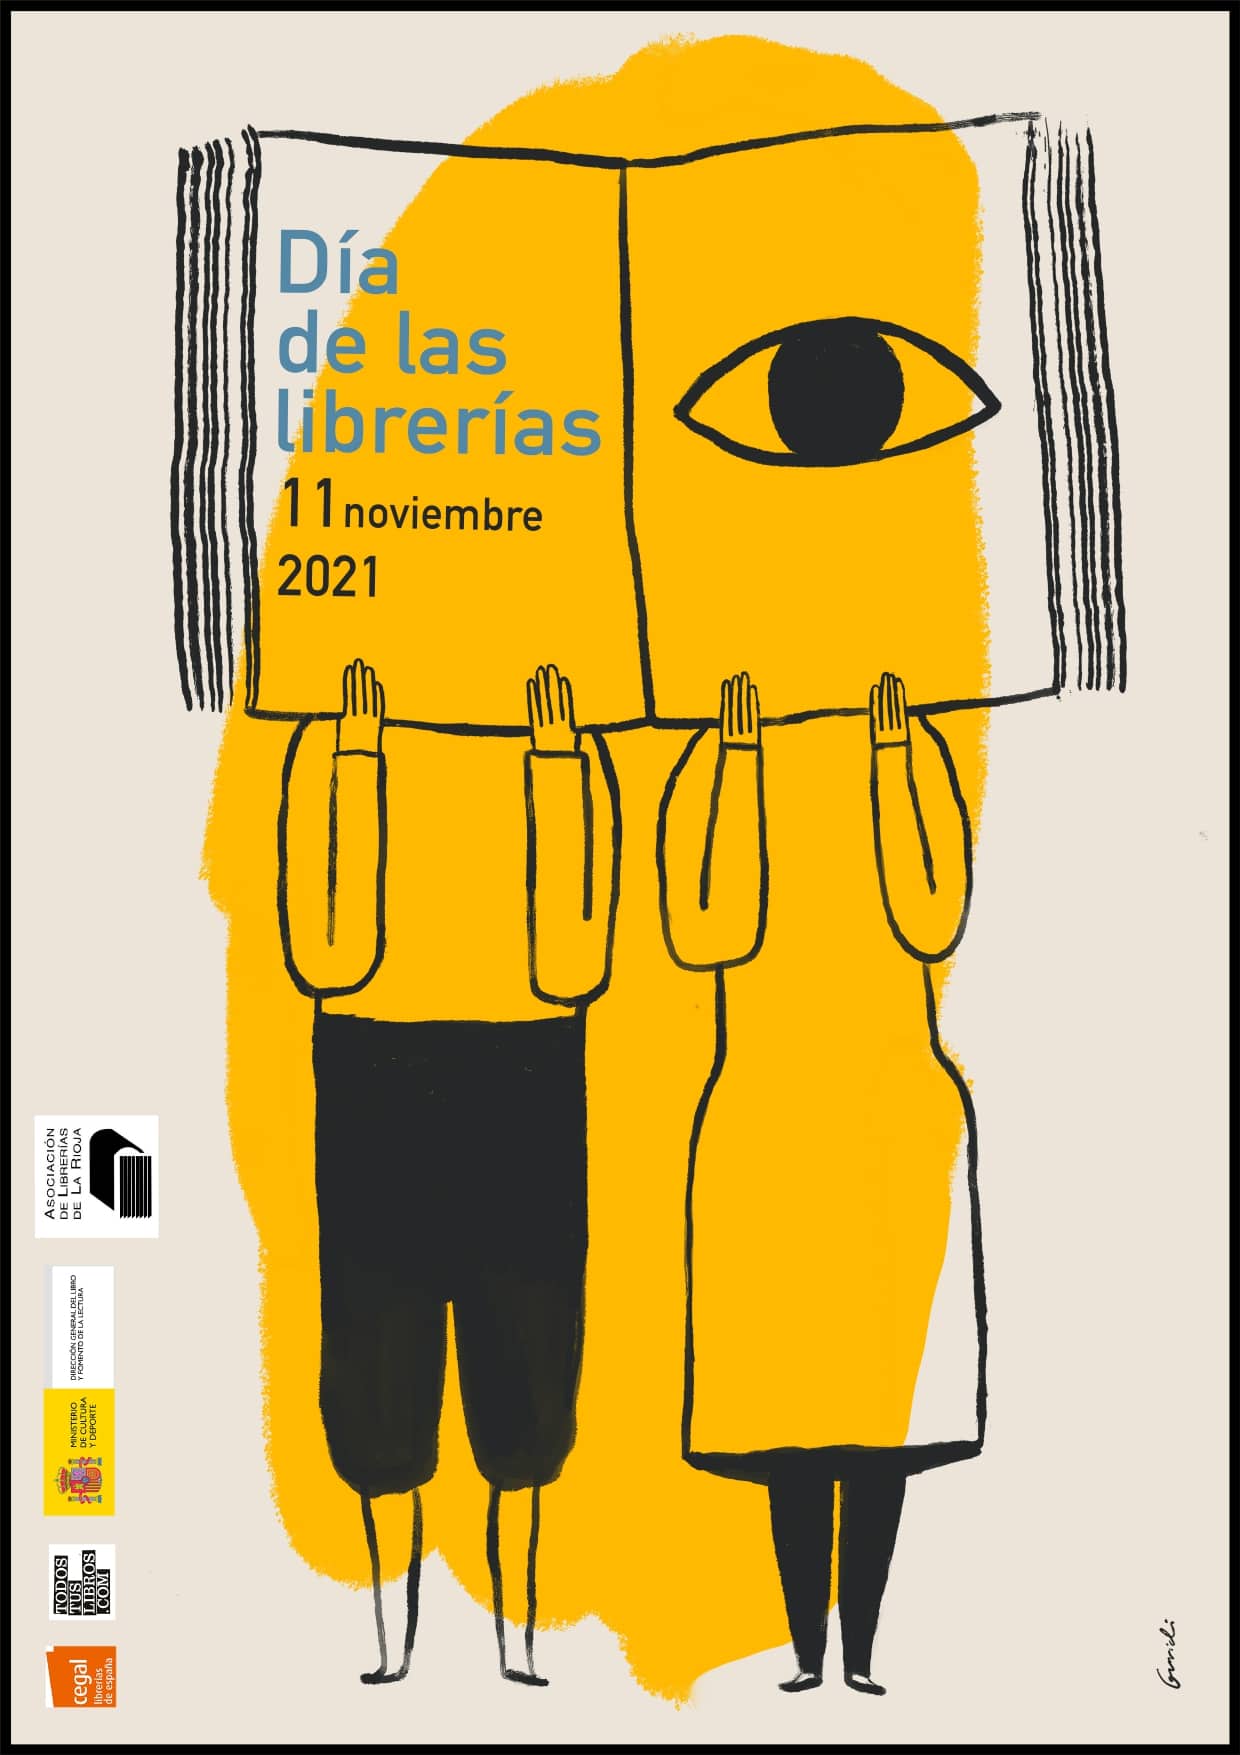 La Asociación de Librerías de La Rioja celebra el Día de las Librerías con descuentos del 5 por ciento toda la semana 1